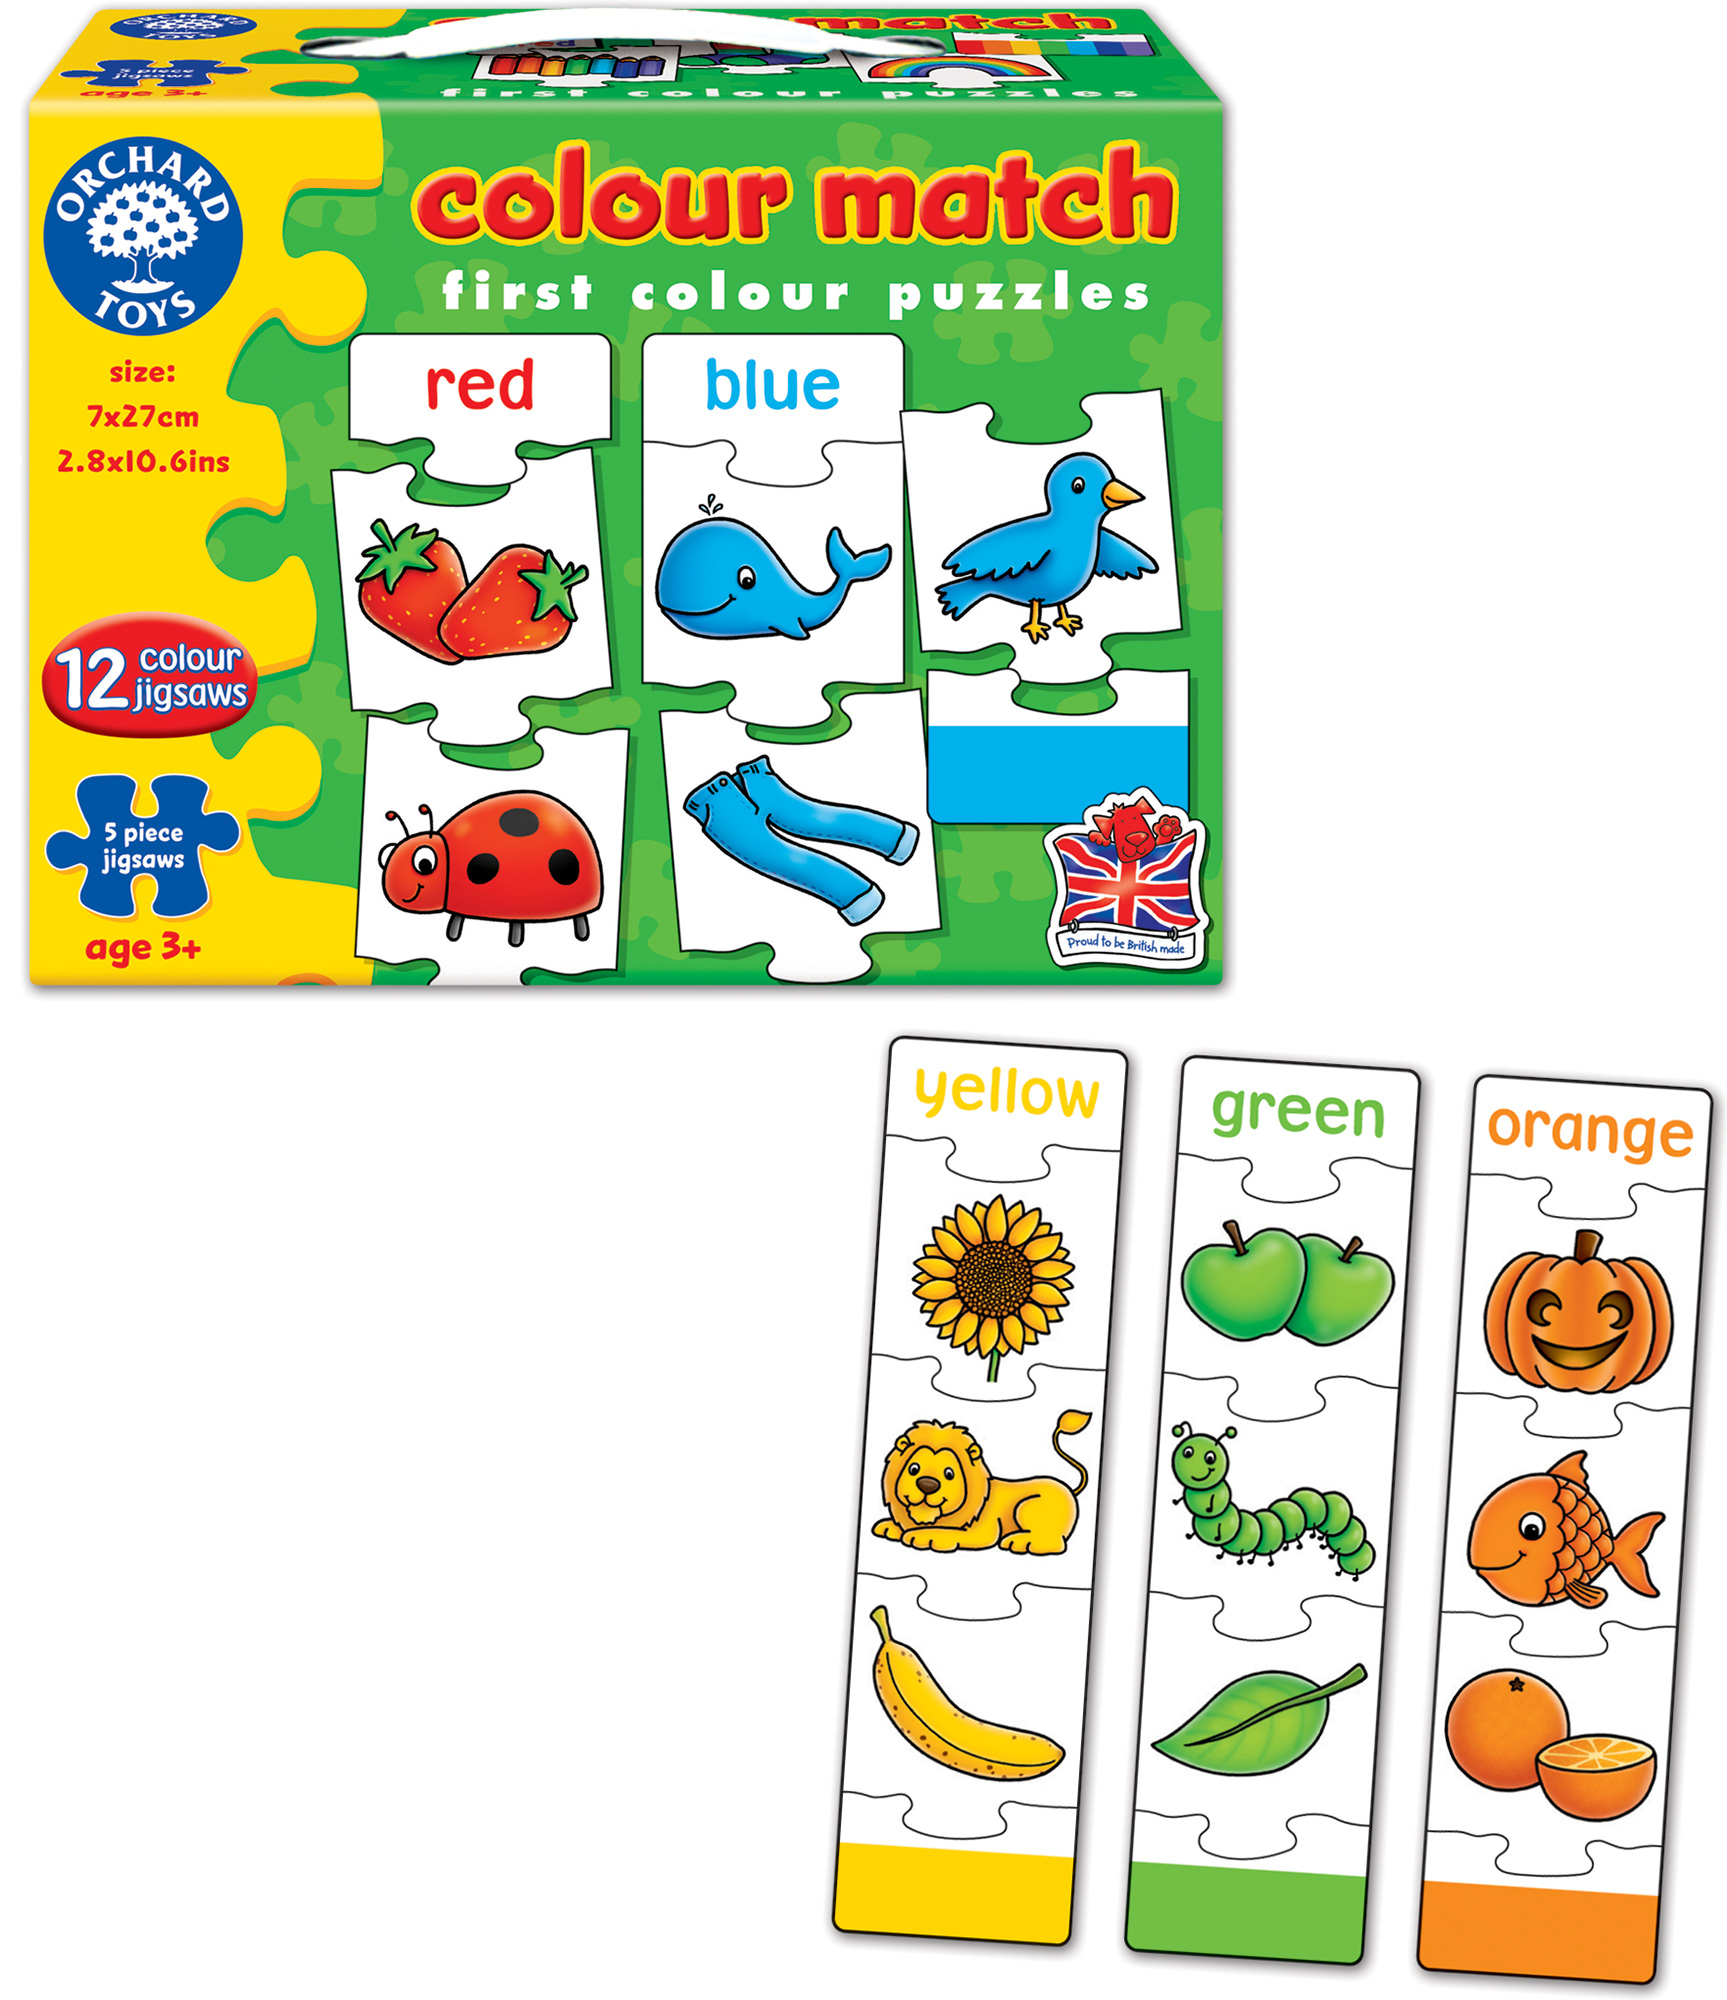 Colour Match. Invata culorile prin asociere